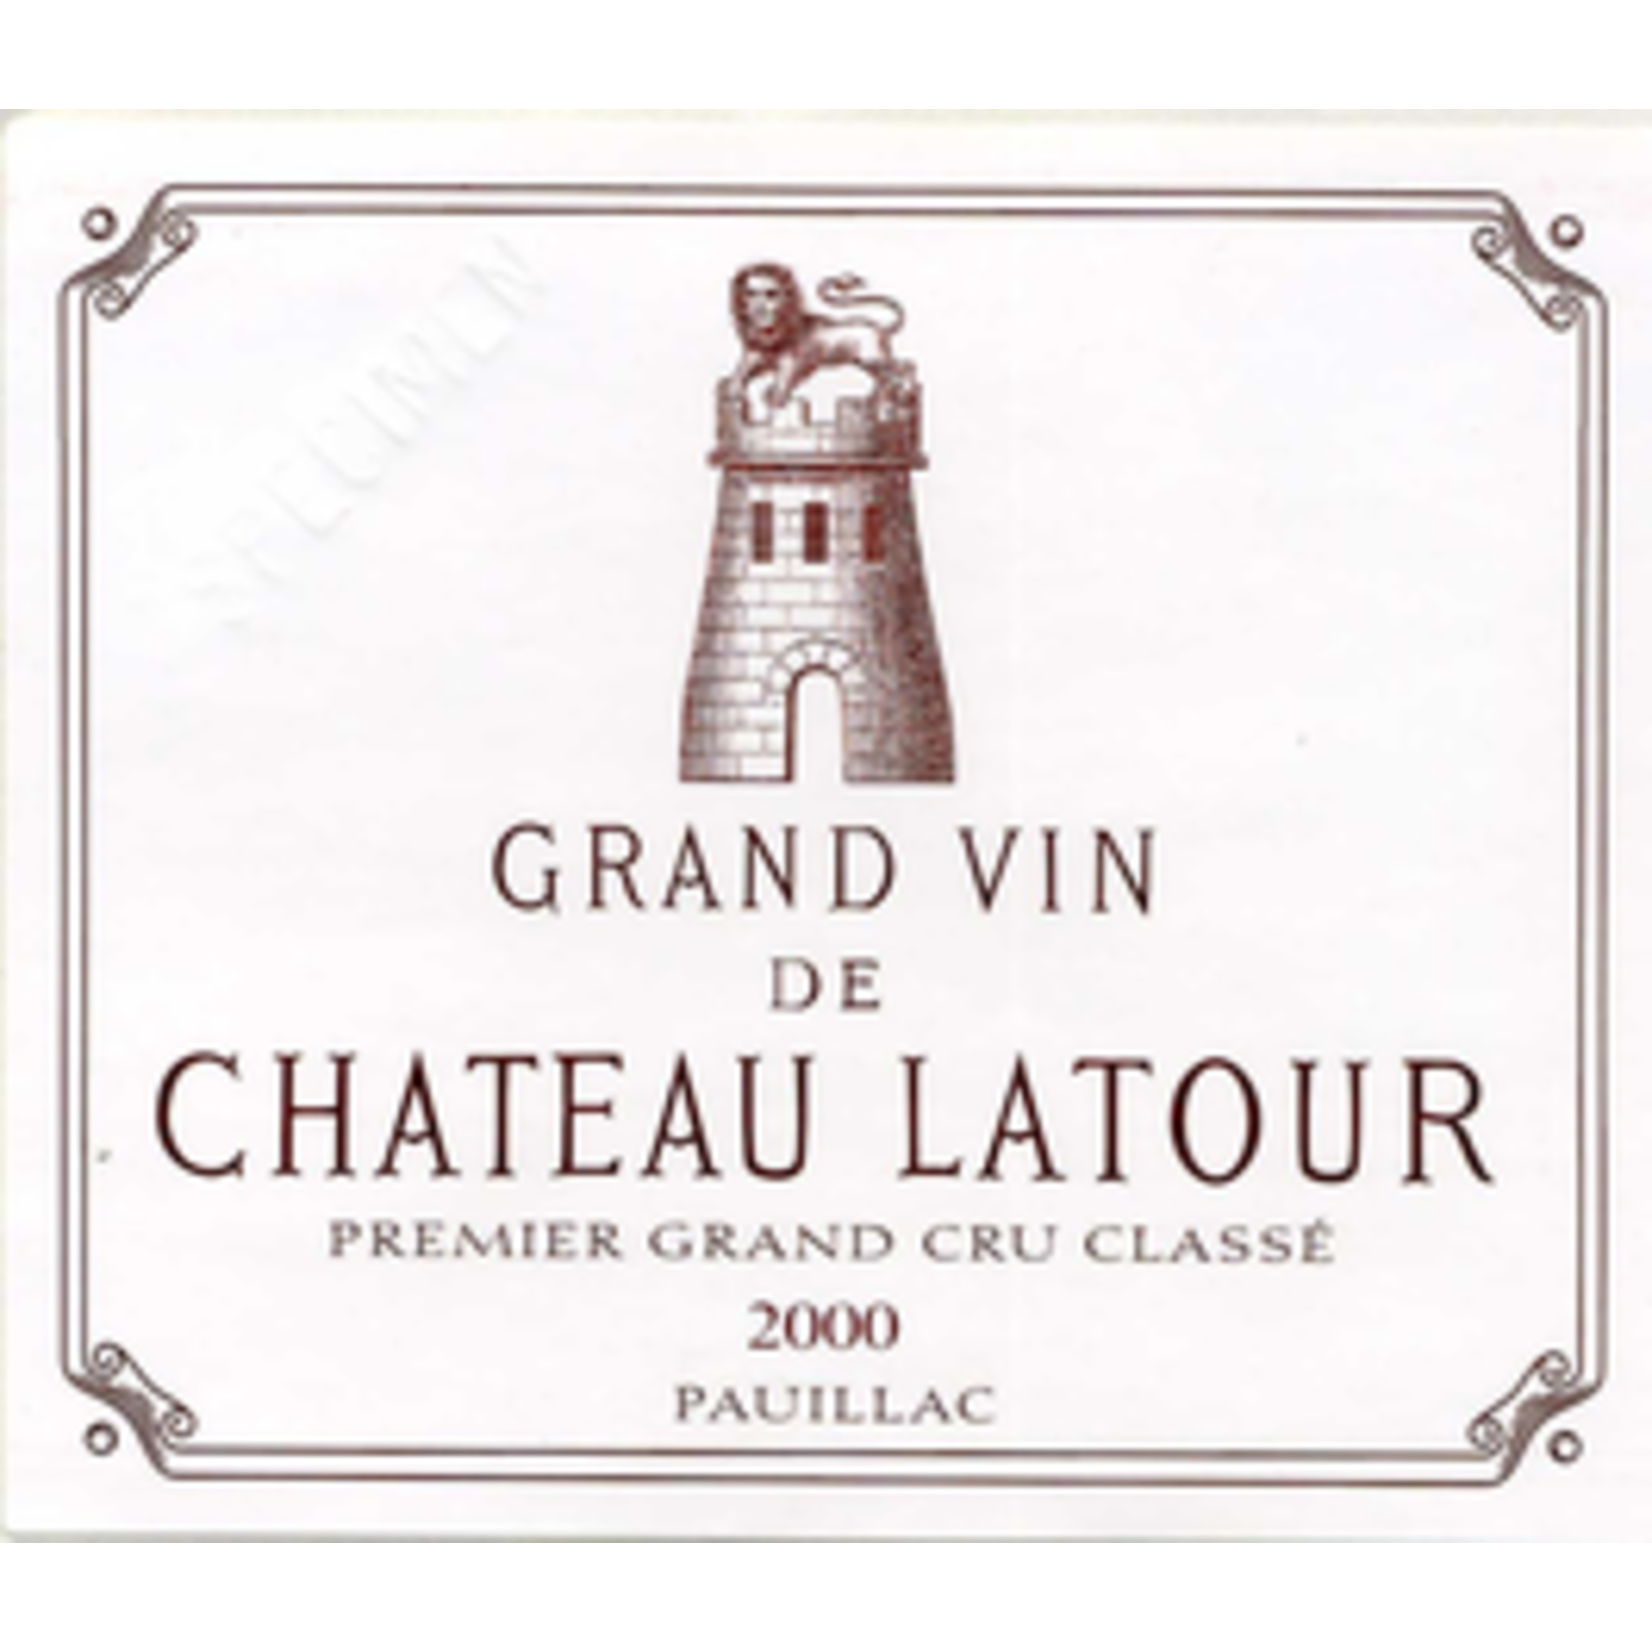 Wine Chateau Latour 2000